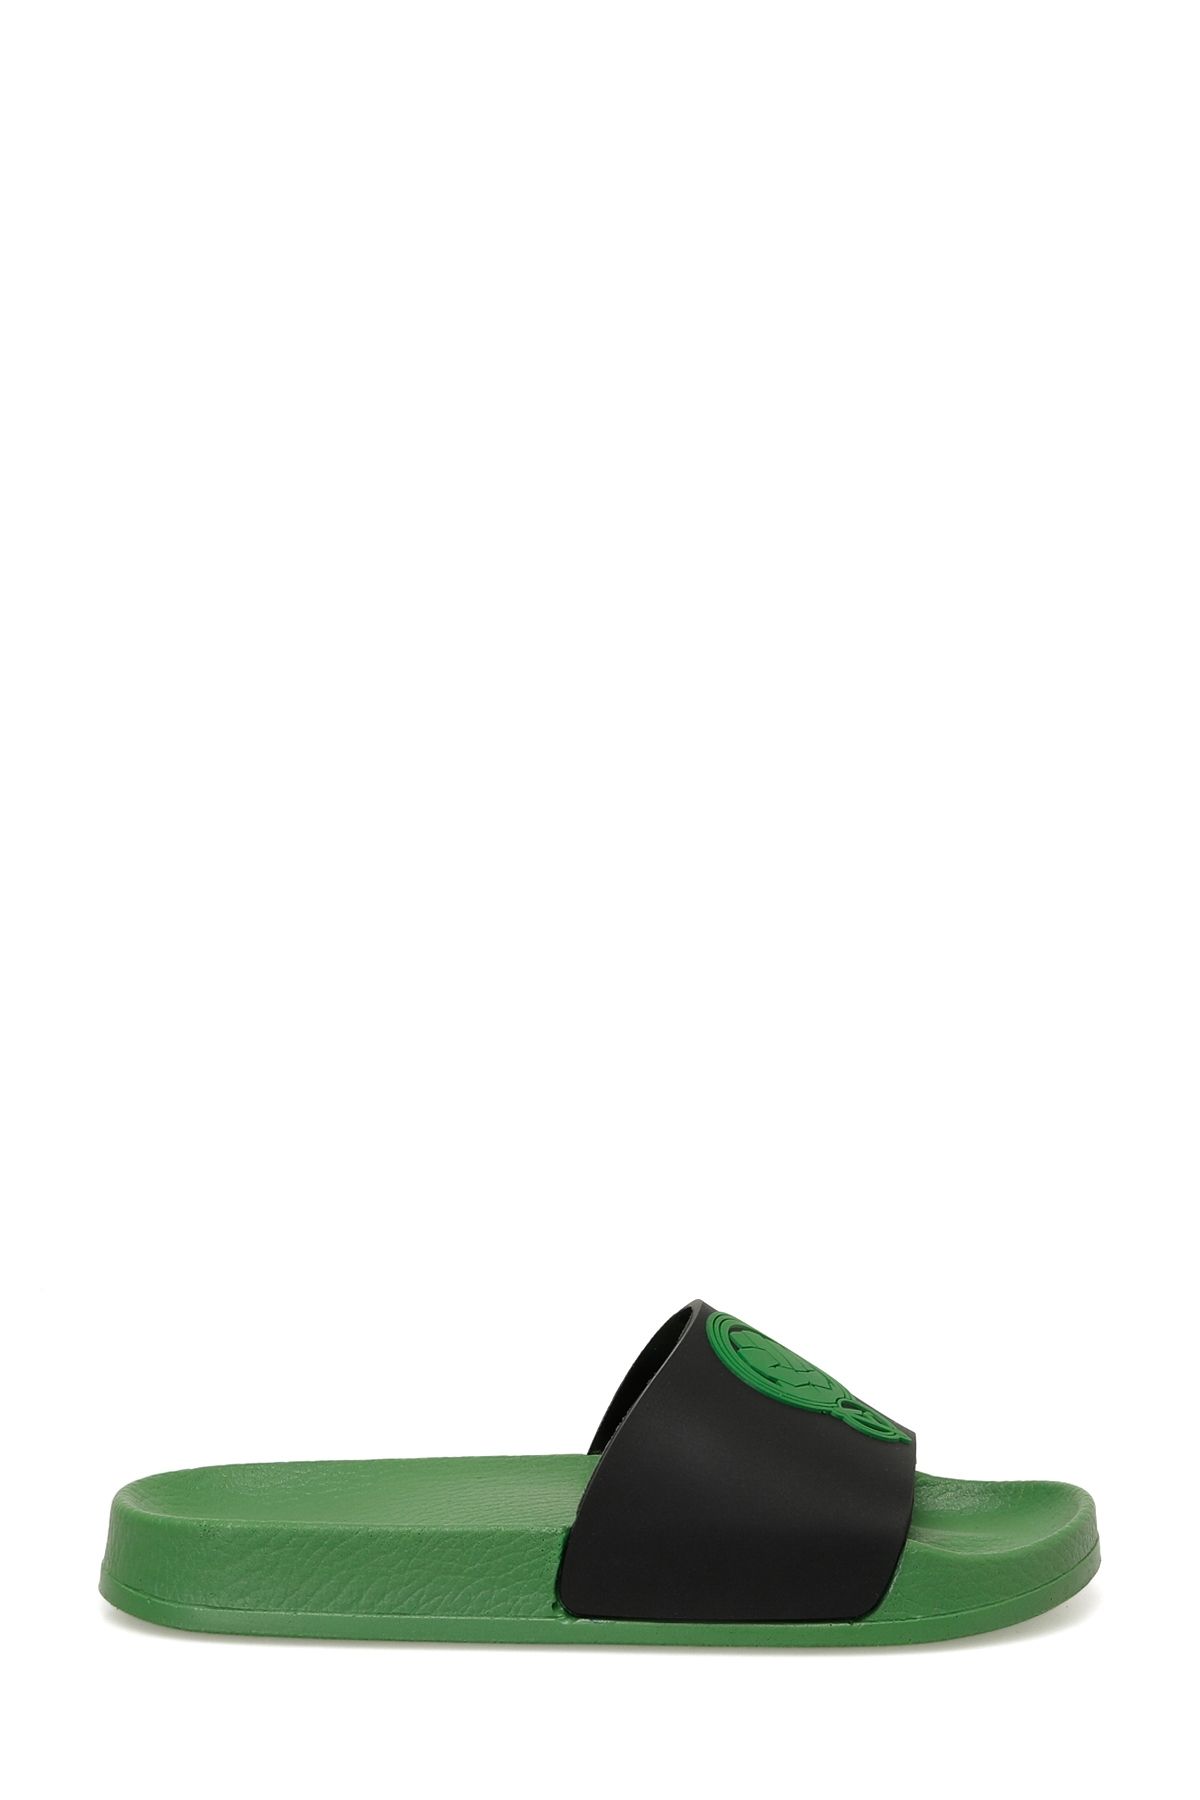 AVENGERS PULY.F4FX Yeşil Erkek Çocuk Deniz Ayakkabısı